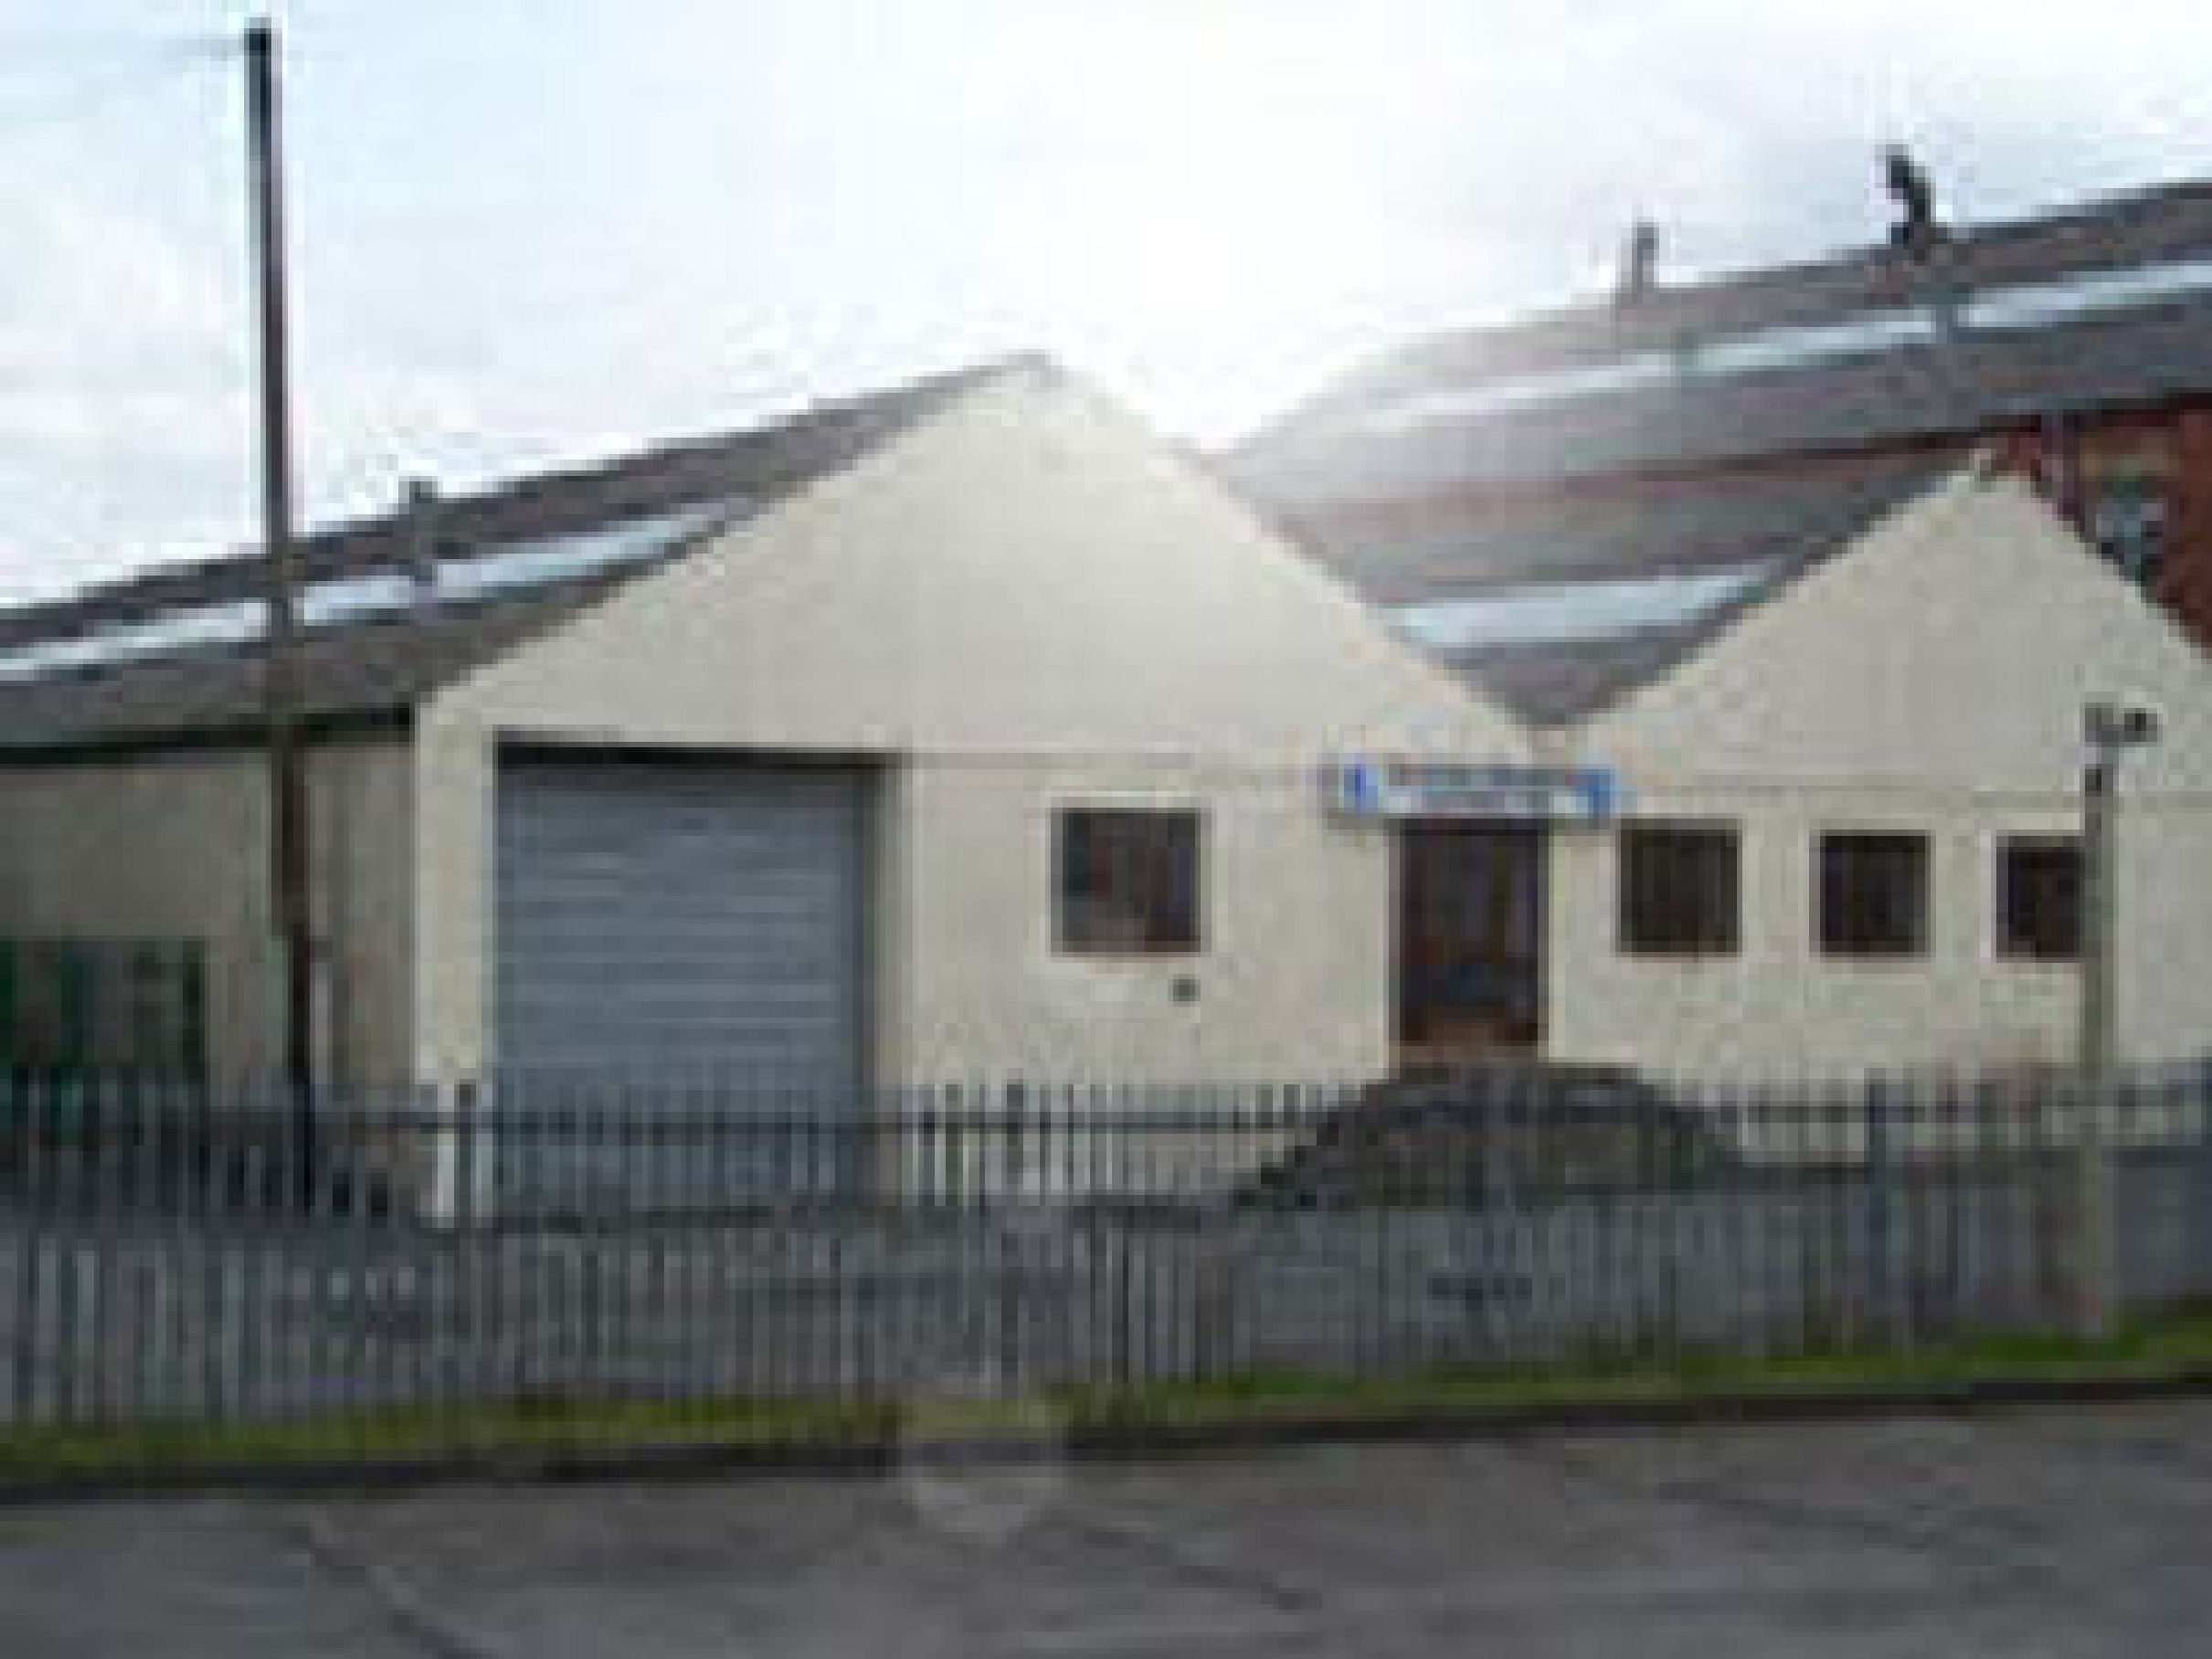 Scottex Factory in Bury